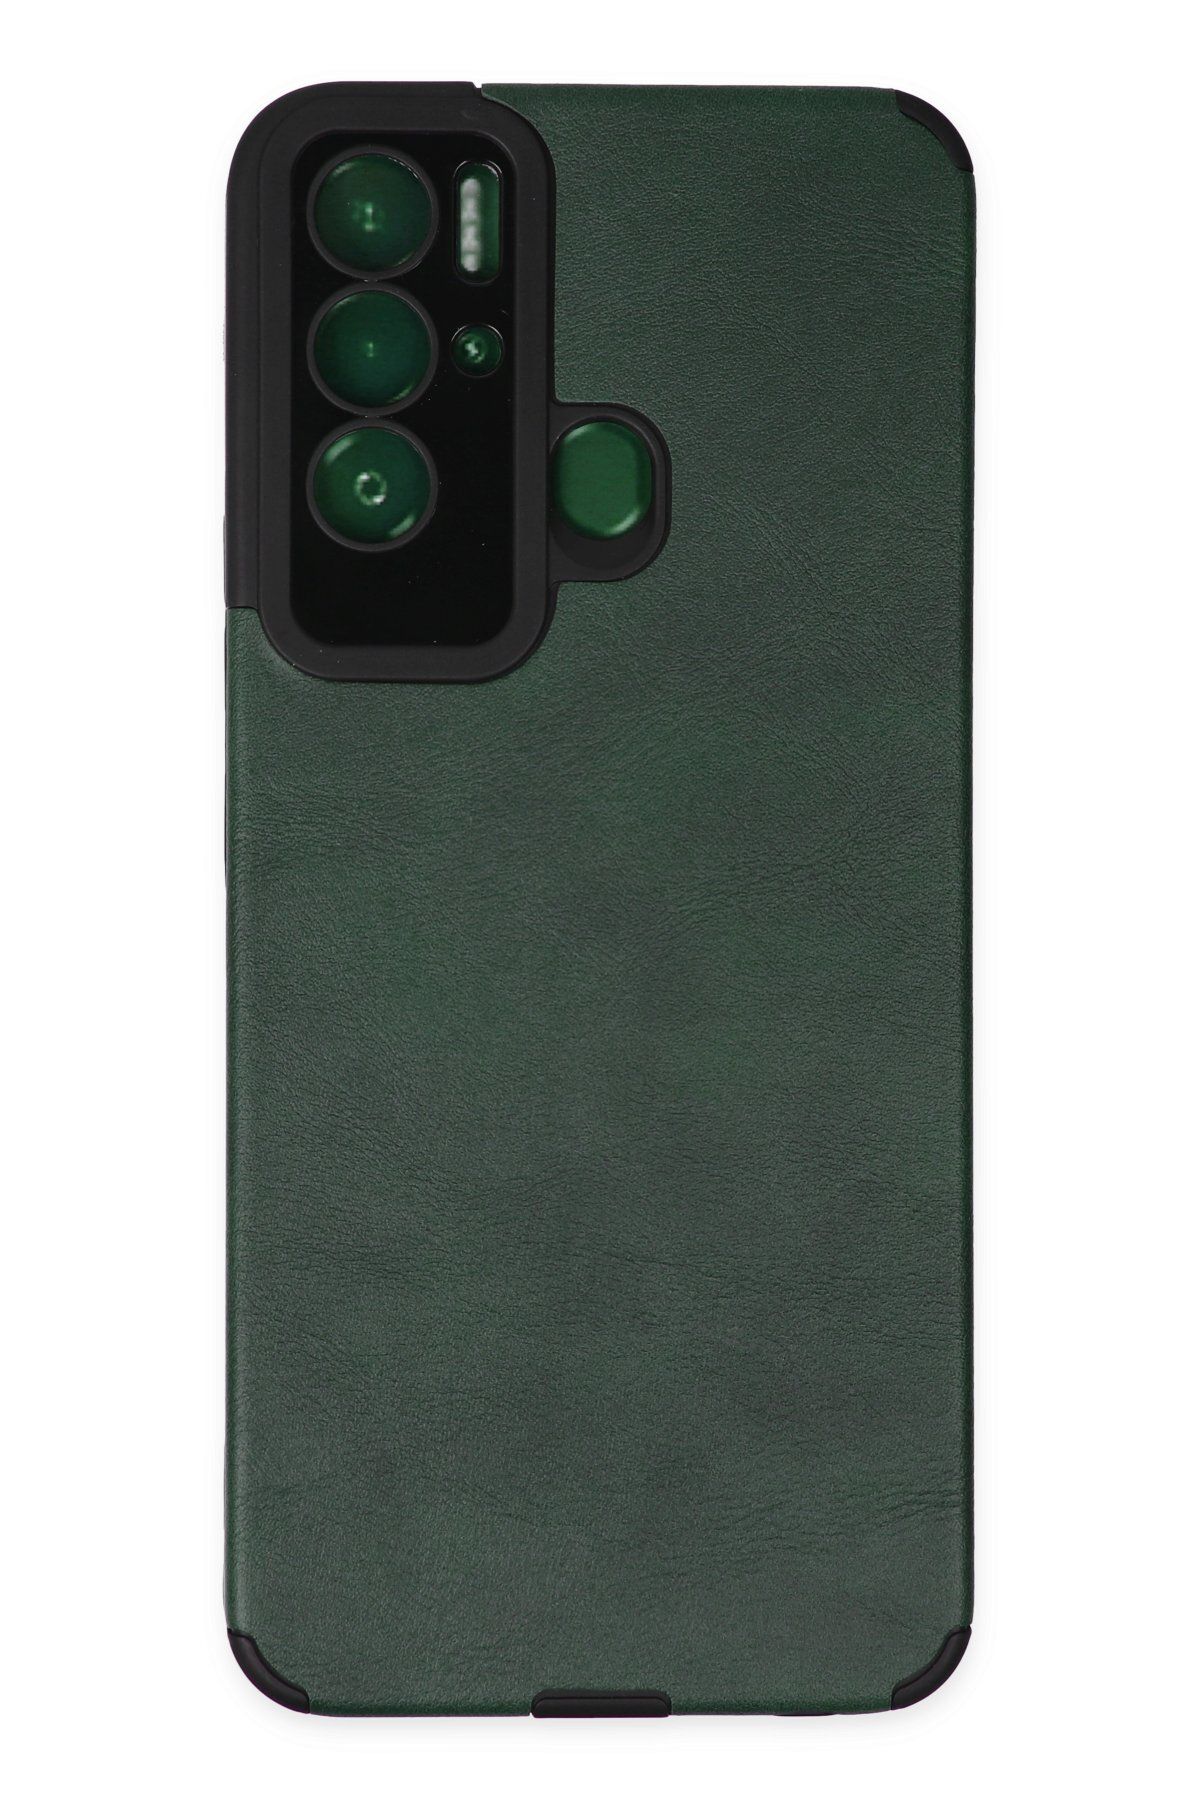 NewFace Tecno POVA NEO Telefon Kılıfı - Deri Tasarımlı Kamera Korumalı Kapak - Yeşil